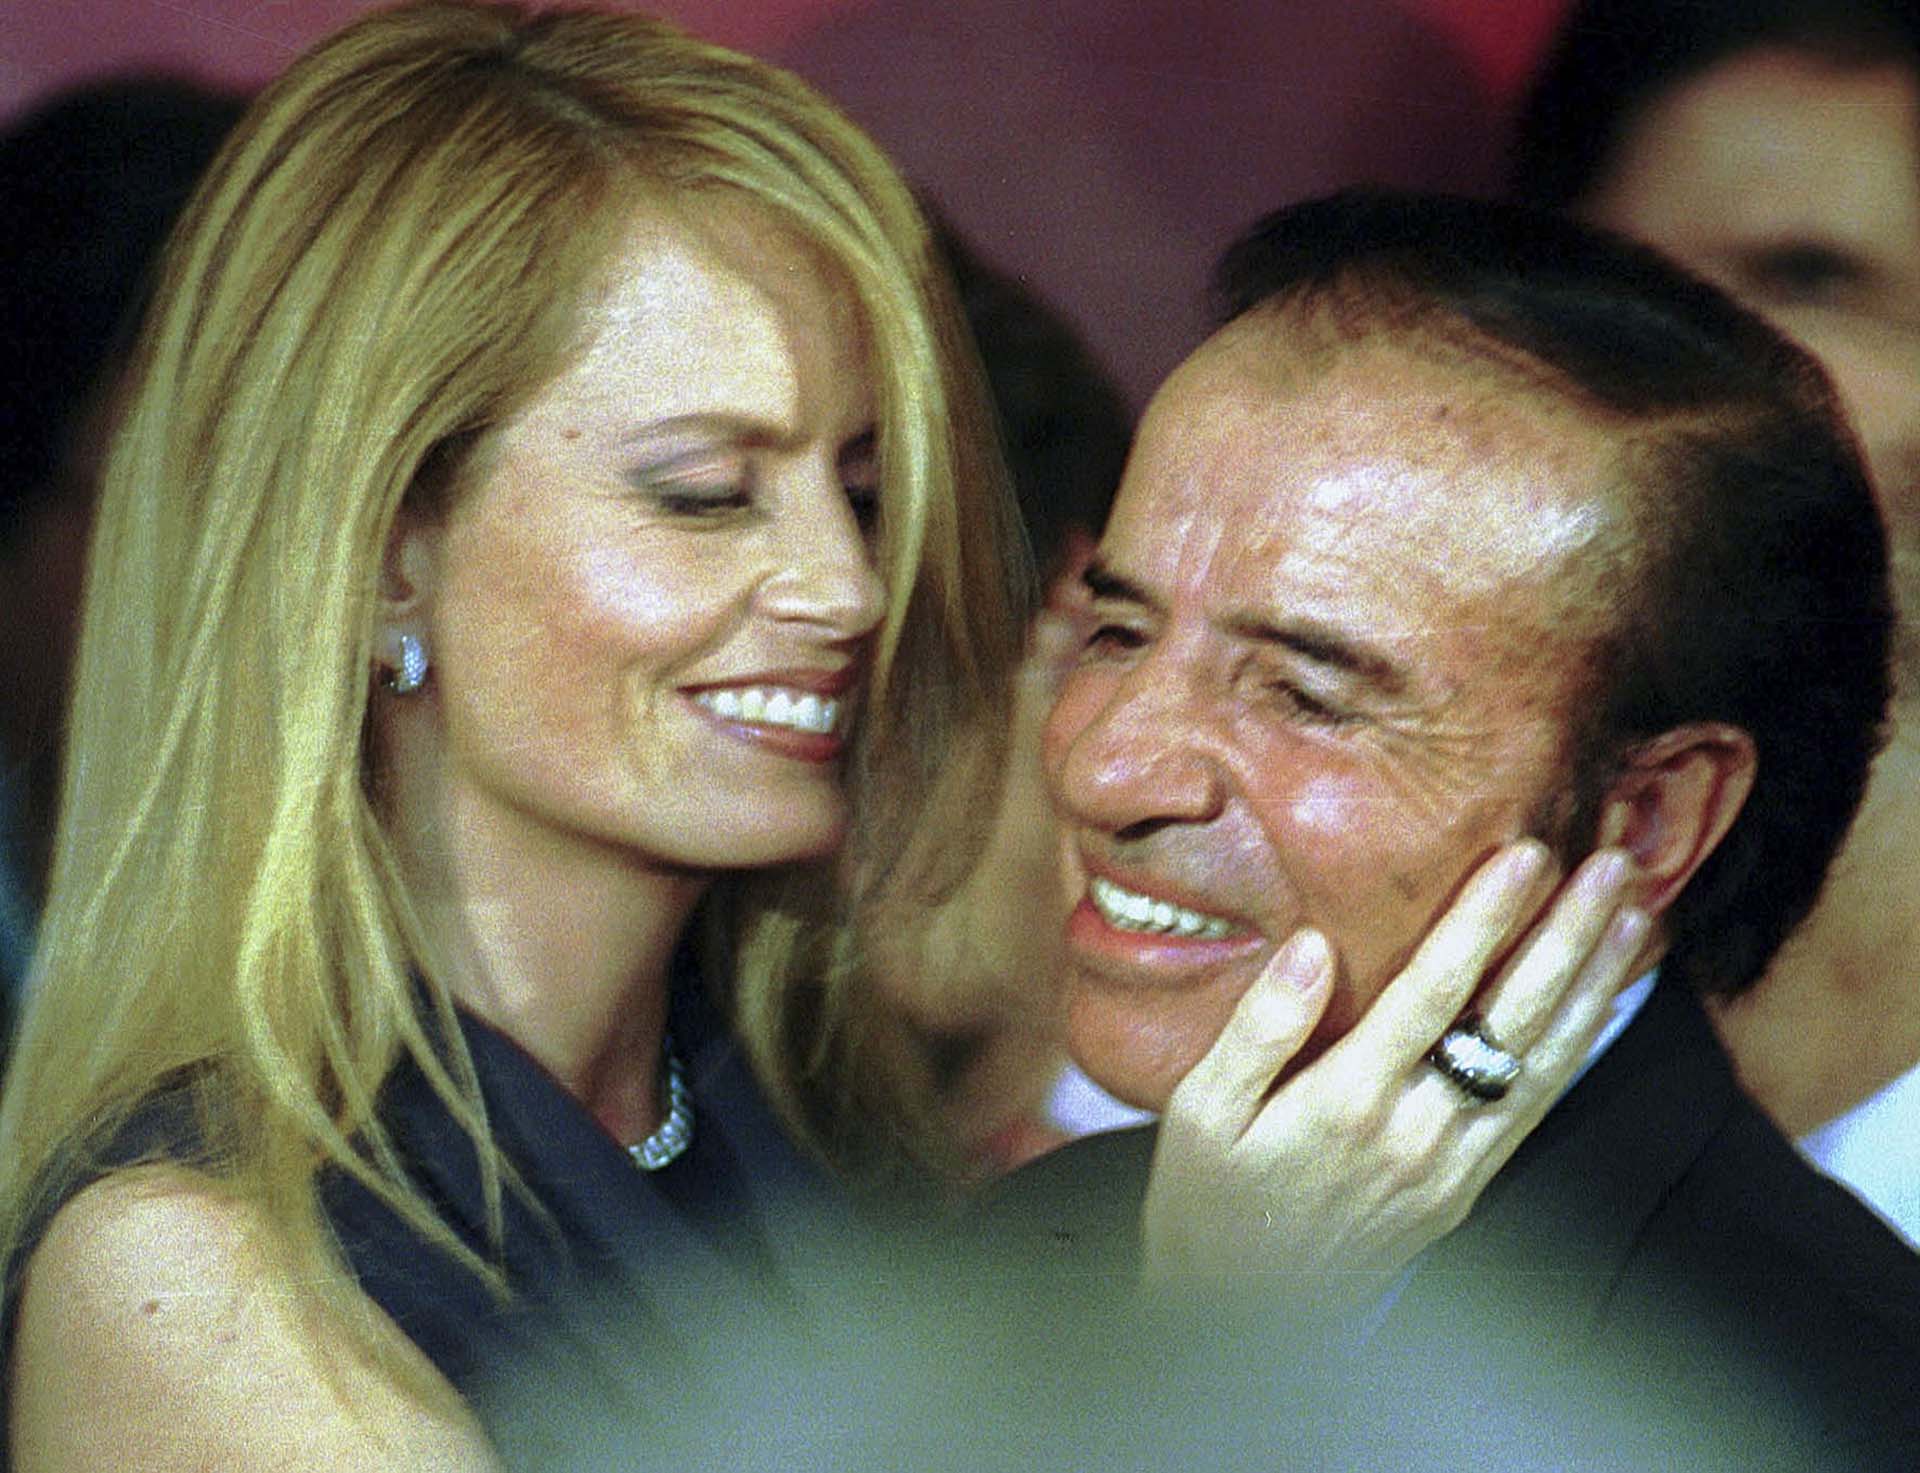 Carlos Menem junto a Cecilia Bolocco, presentadora de televisión, actriz y modelo chilena, con quien estuvo casado entre 2001 y 2007